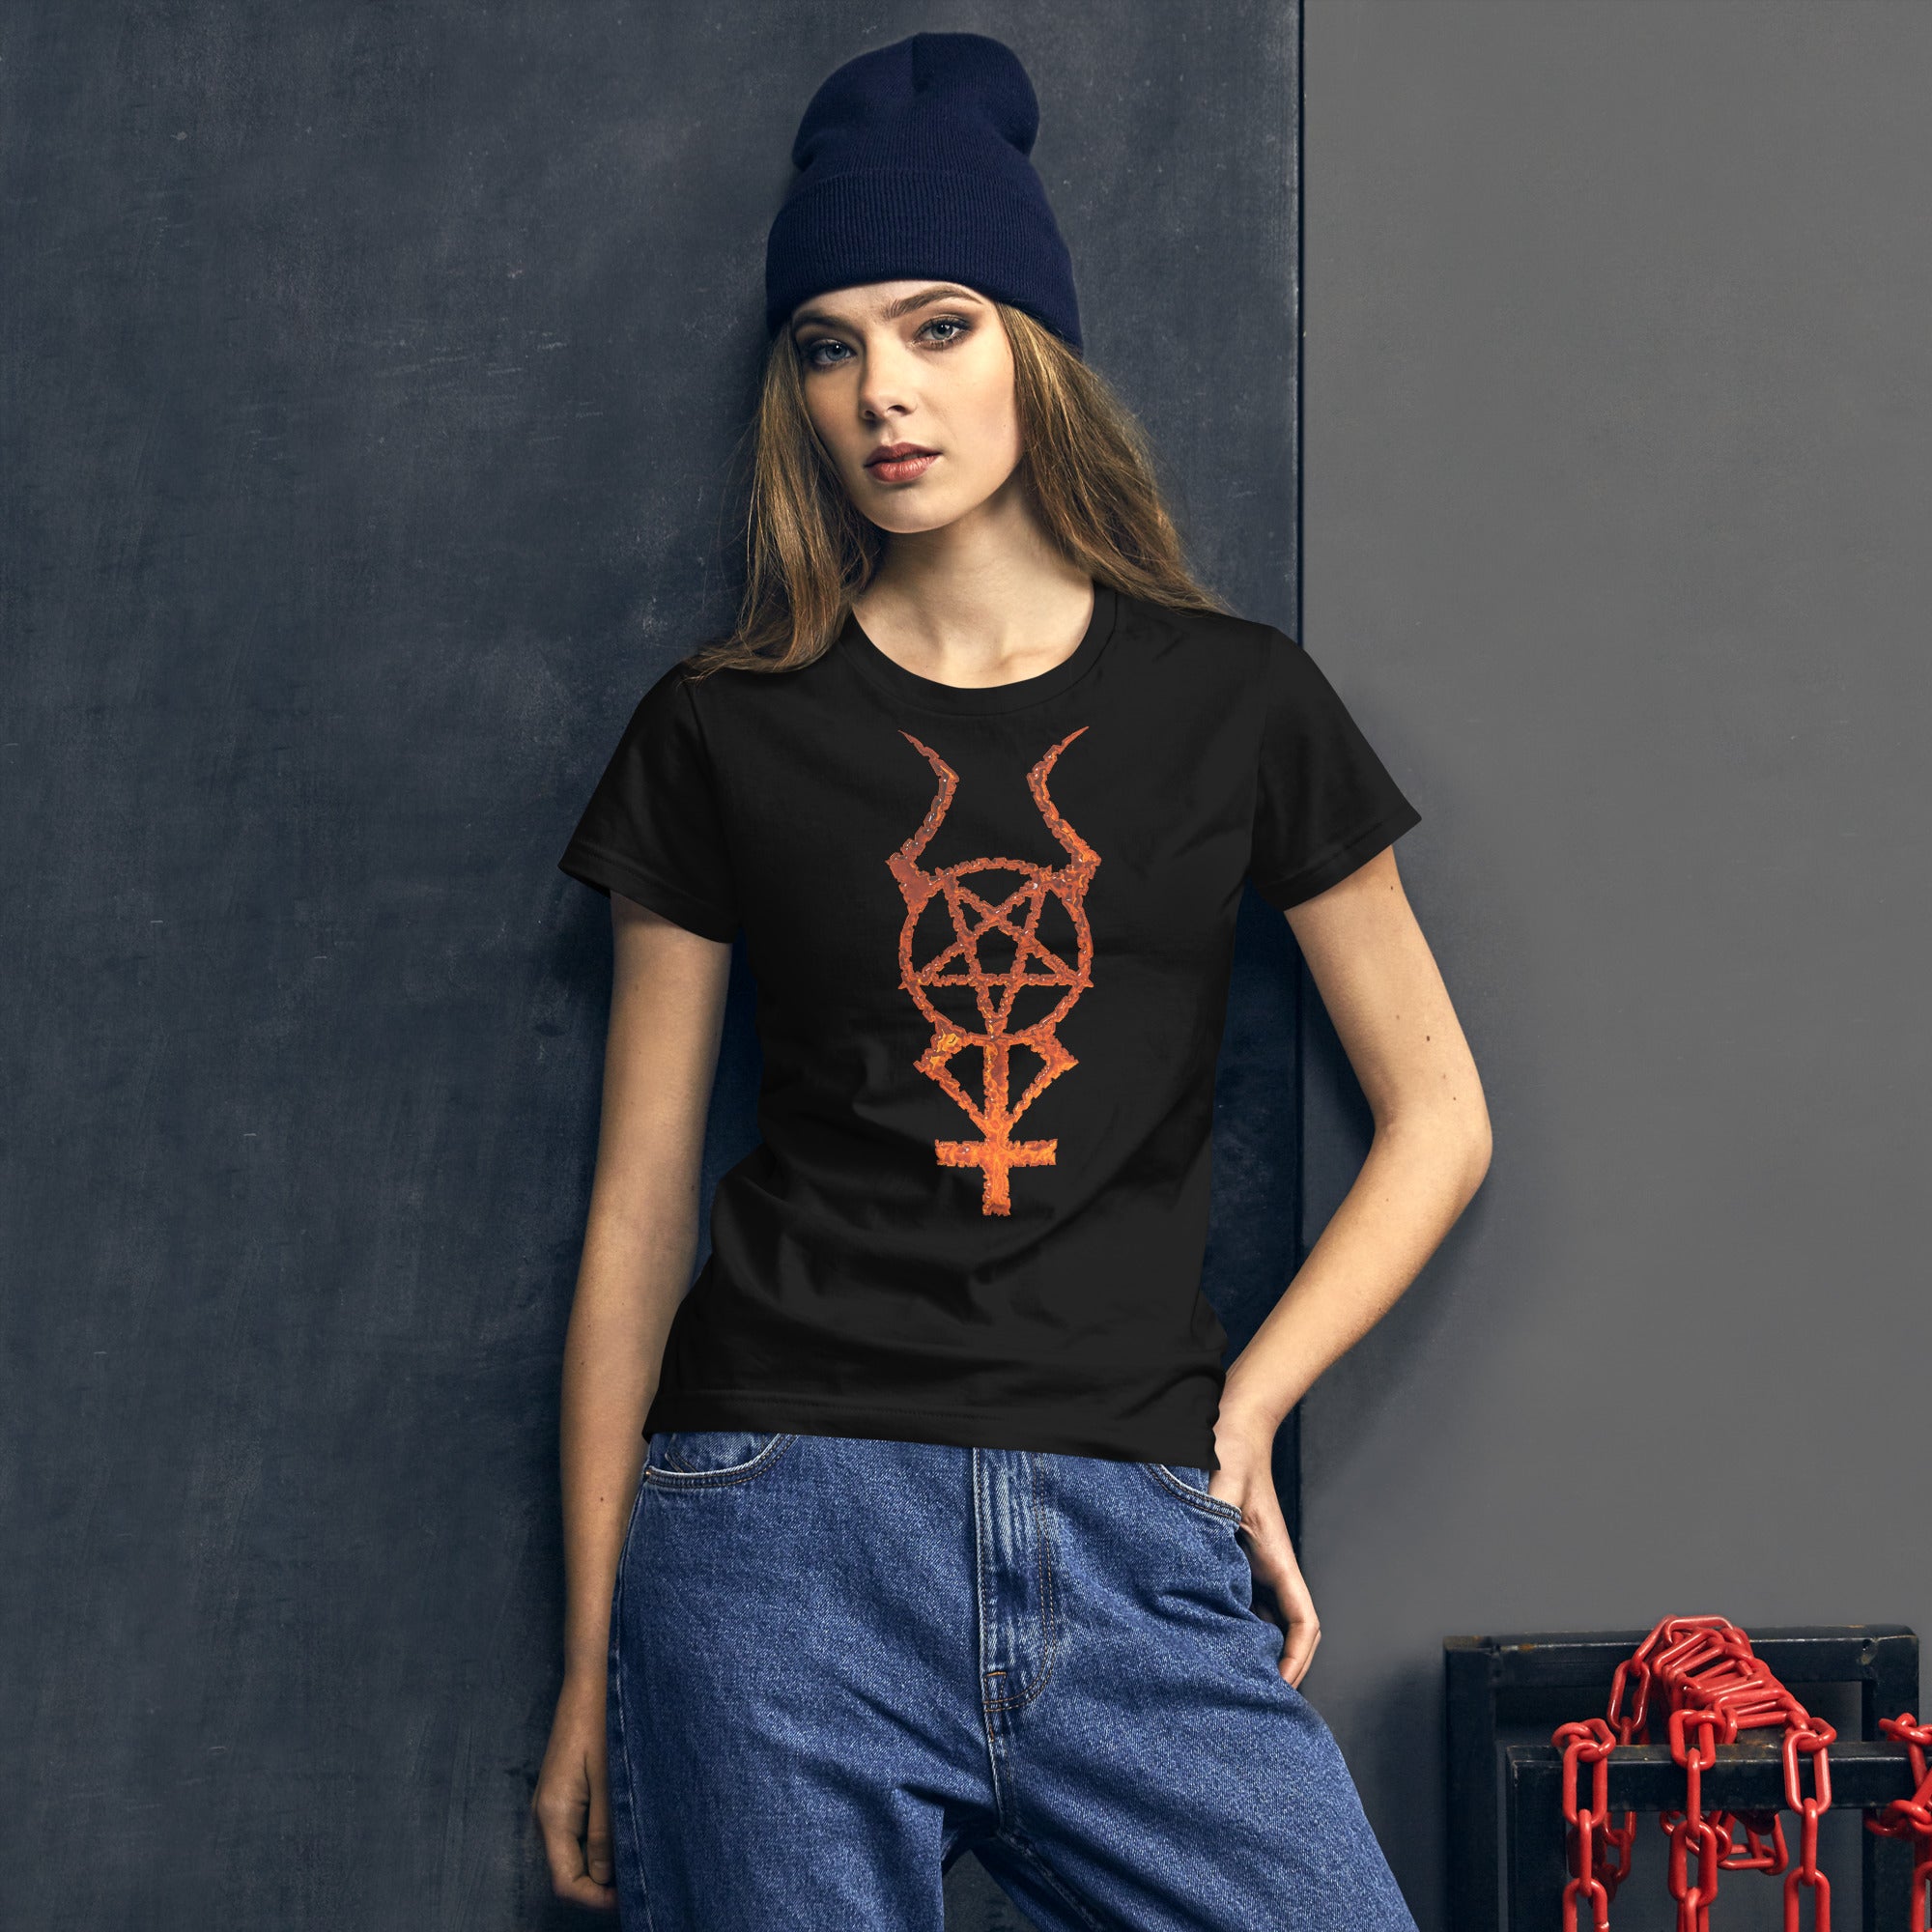 Flame Horned Pentacross Pentagram Cross Women's Short Sleeve Babydoll T-shirt